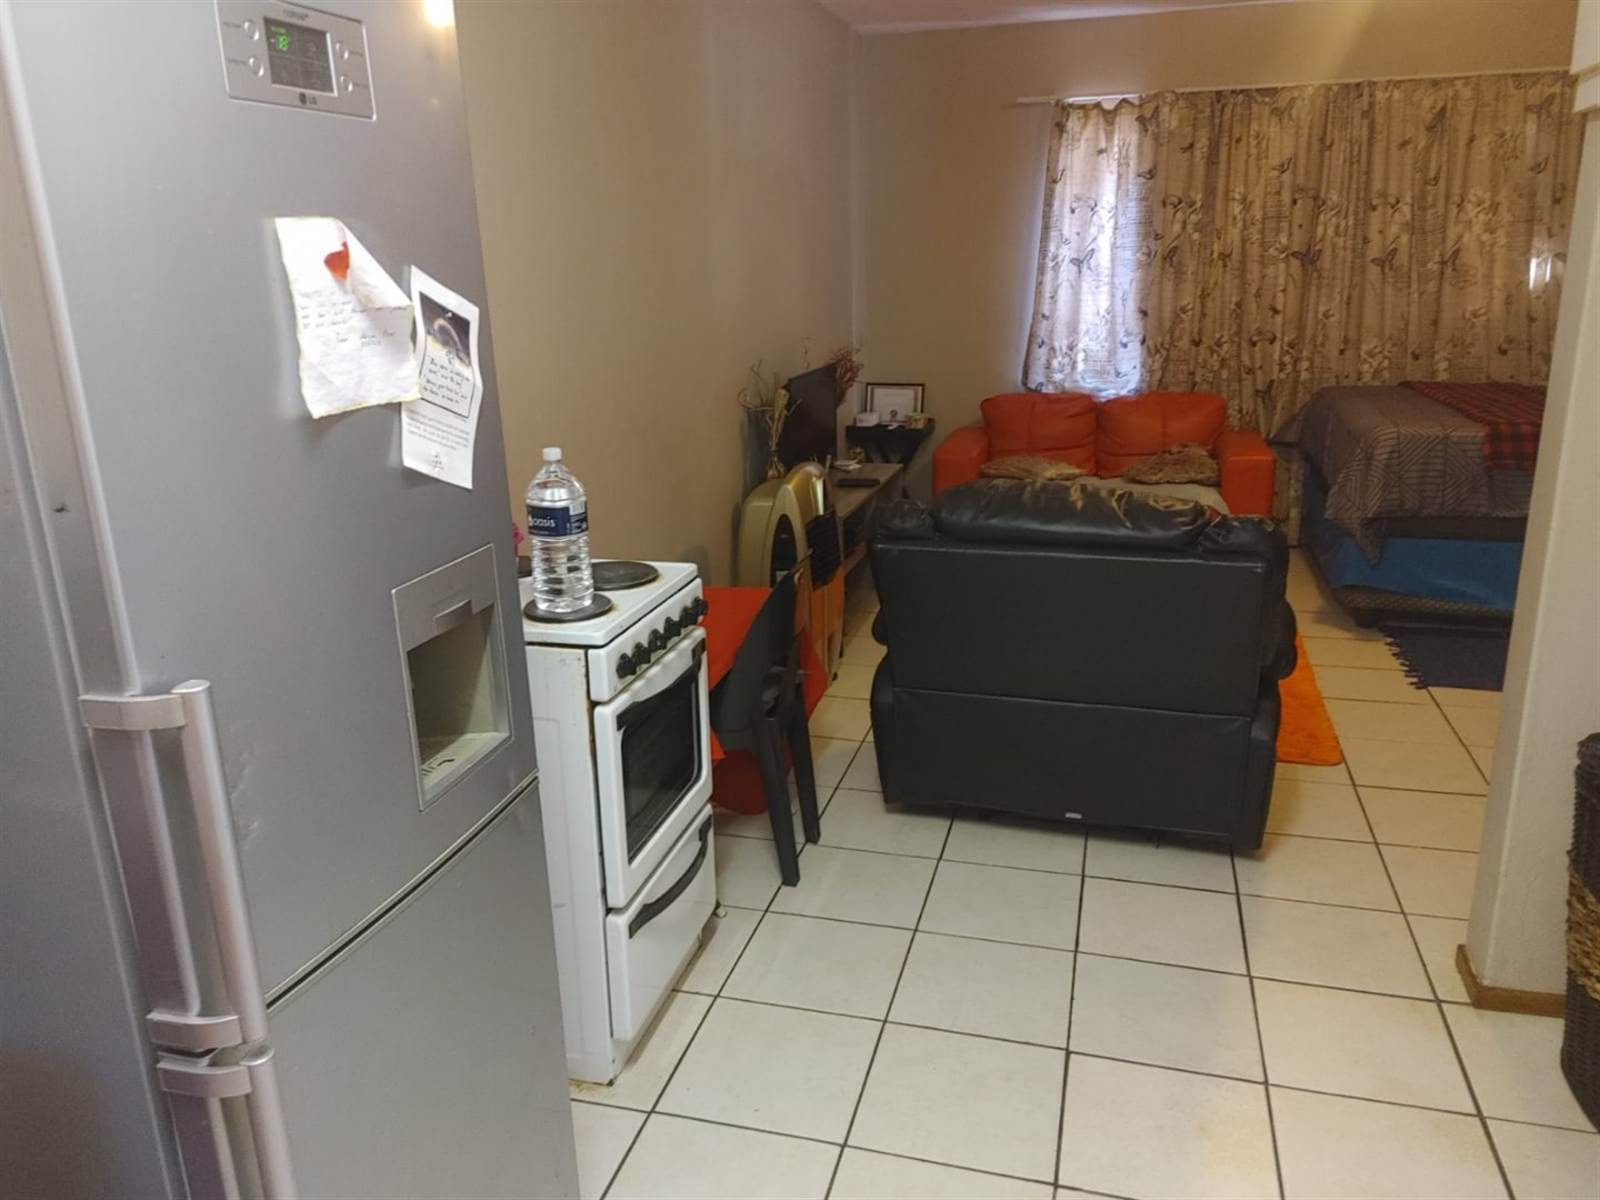 1 Bed Apartment in Pretoria West photo number 3